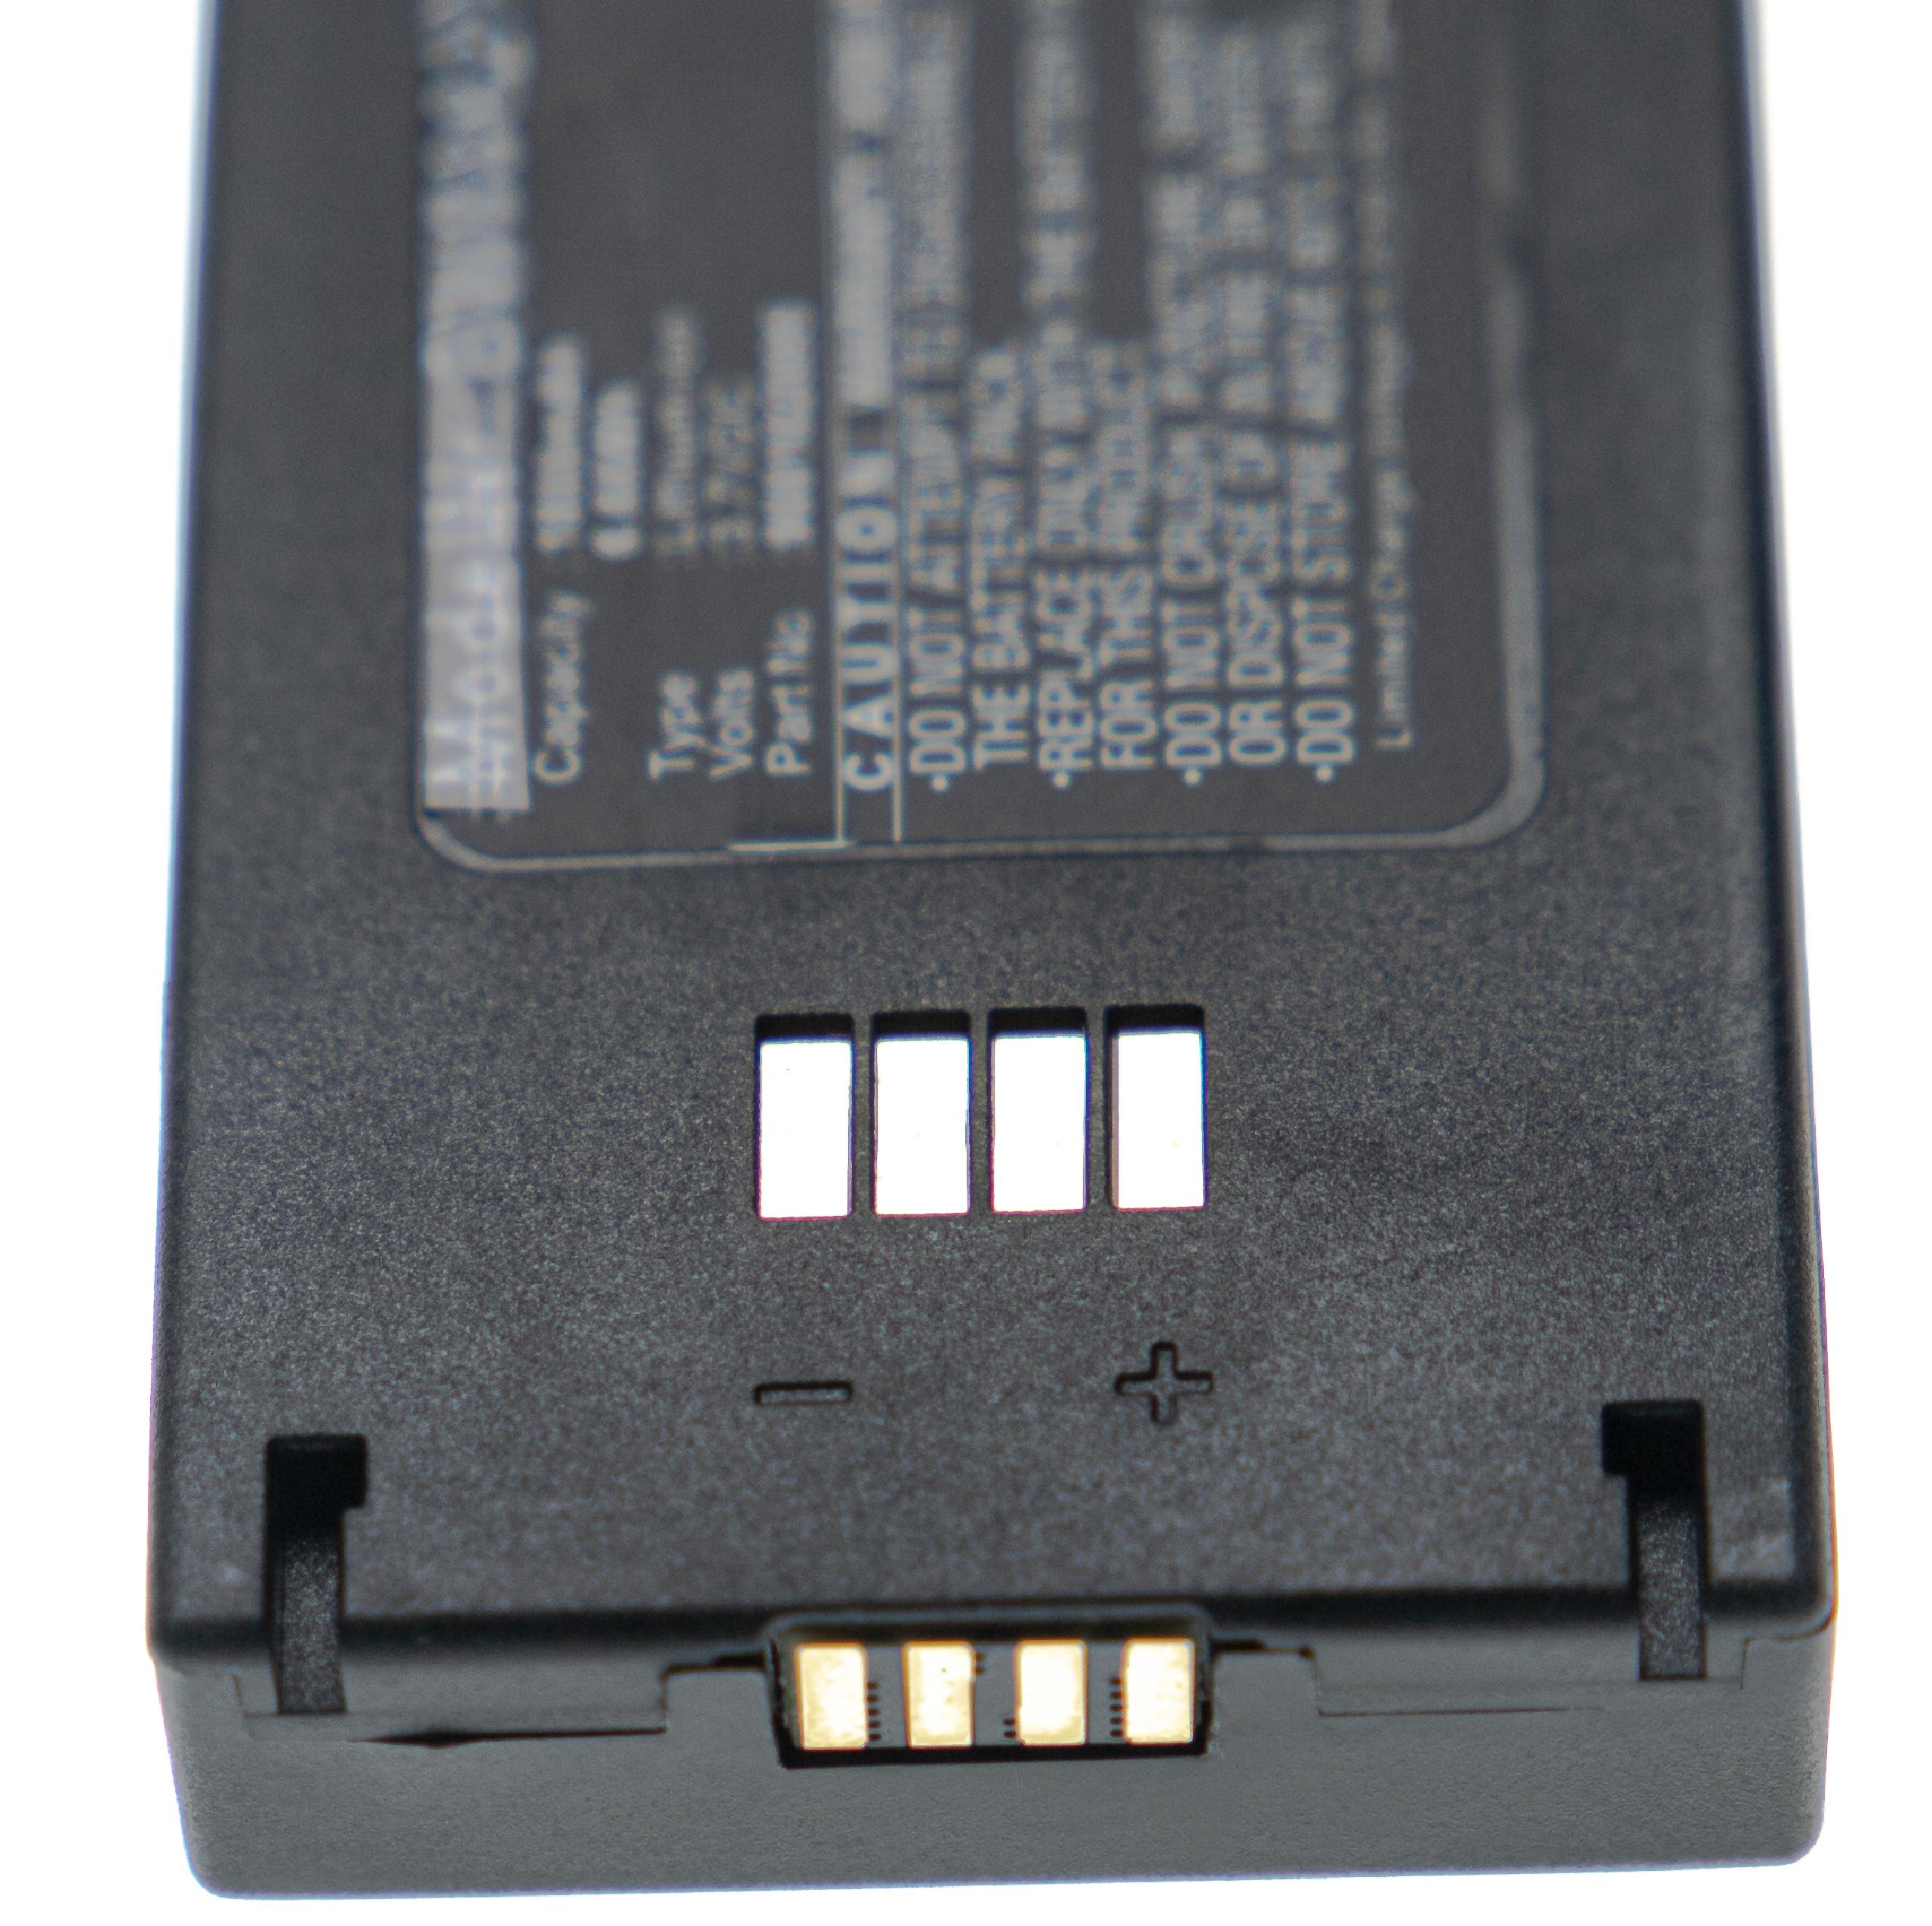 Batterie remplace Konftel 900102124 pour téléphone main-libre - 1800mAh 4,2V Li-ion